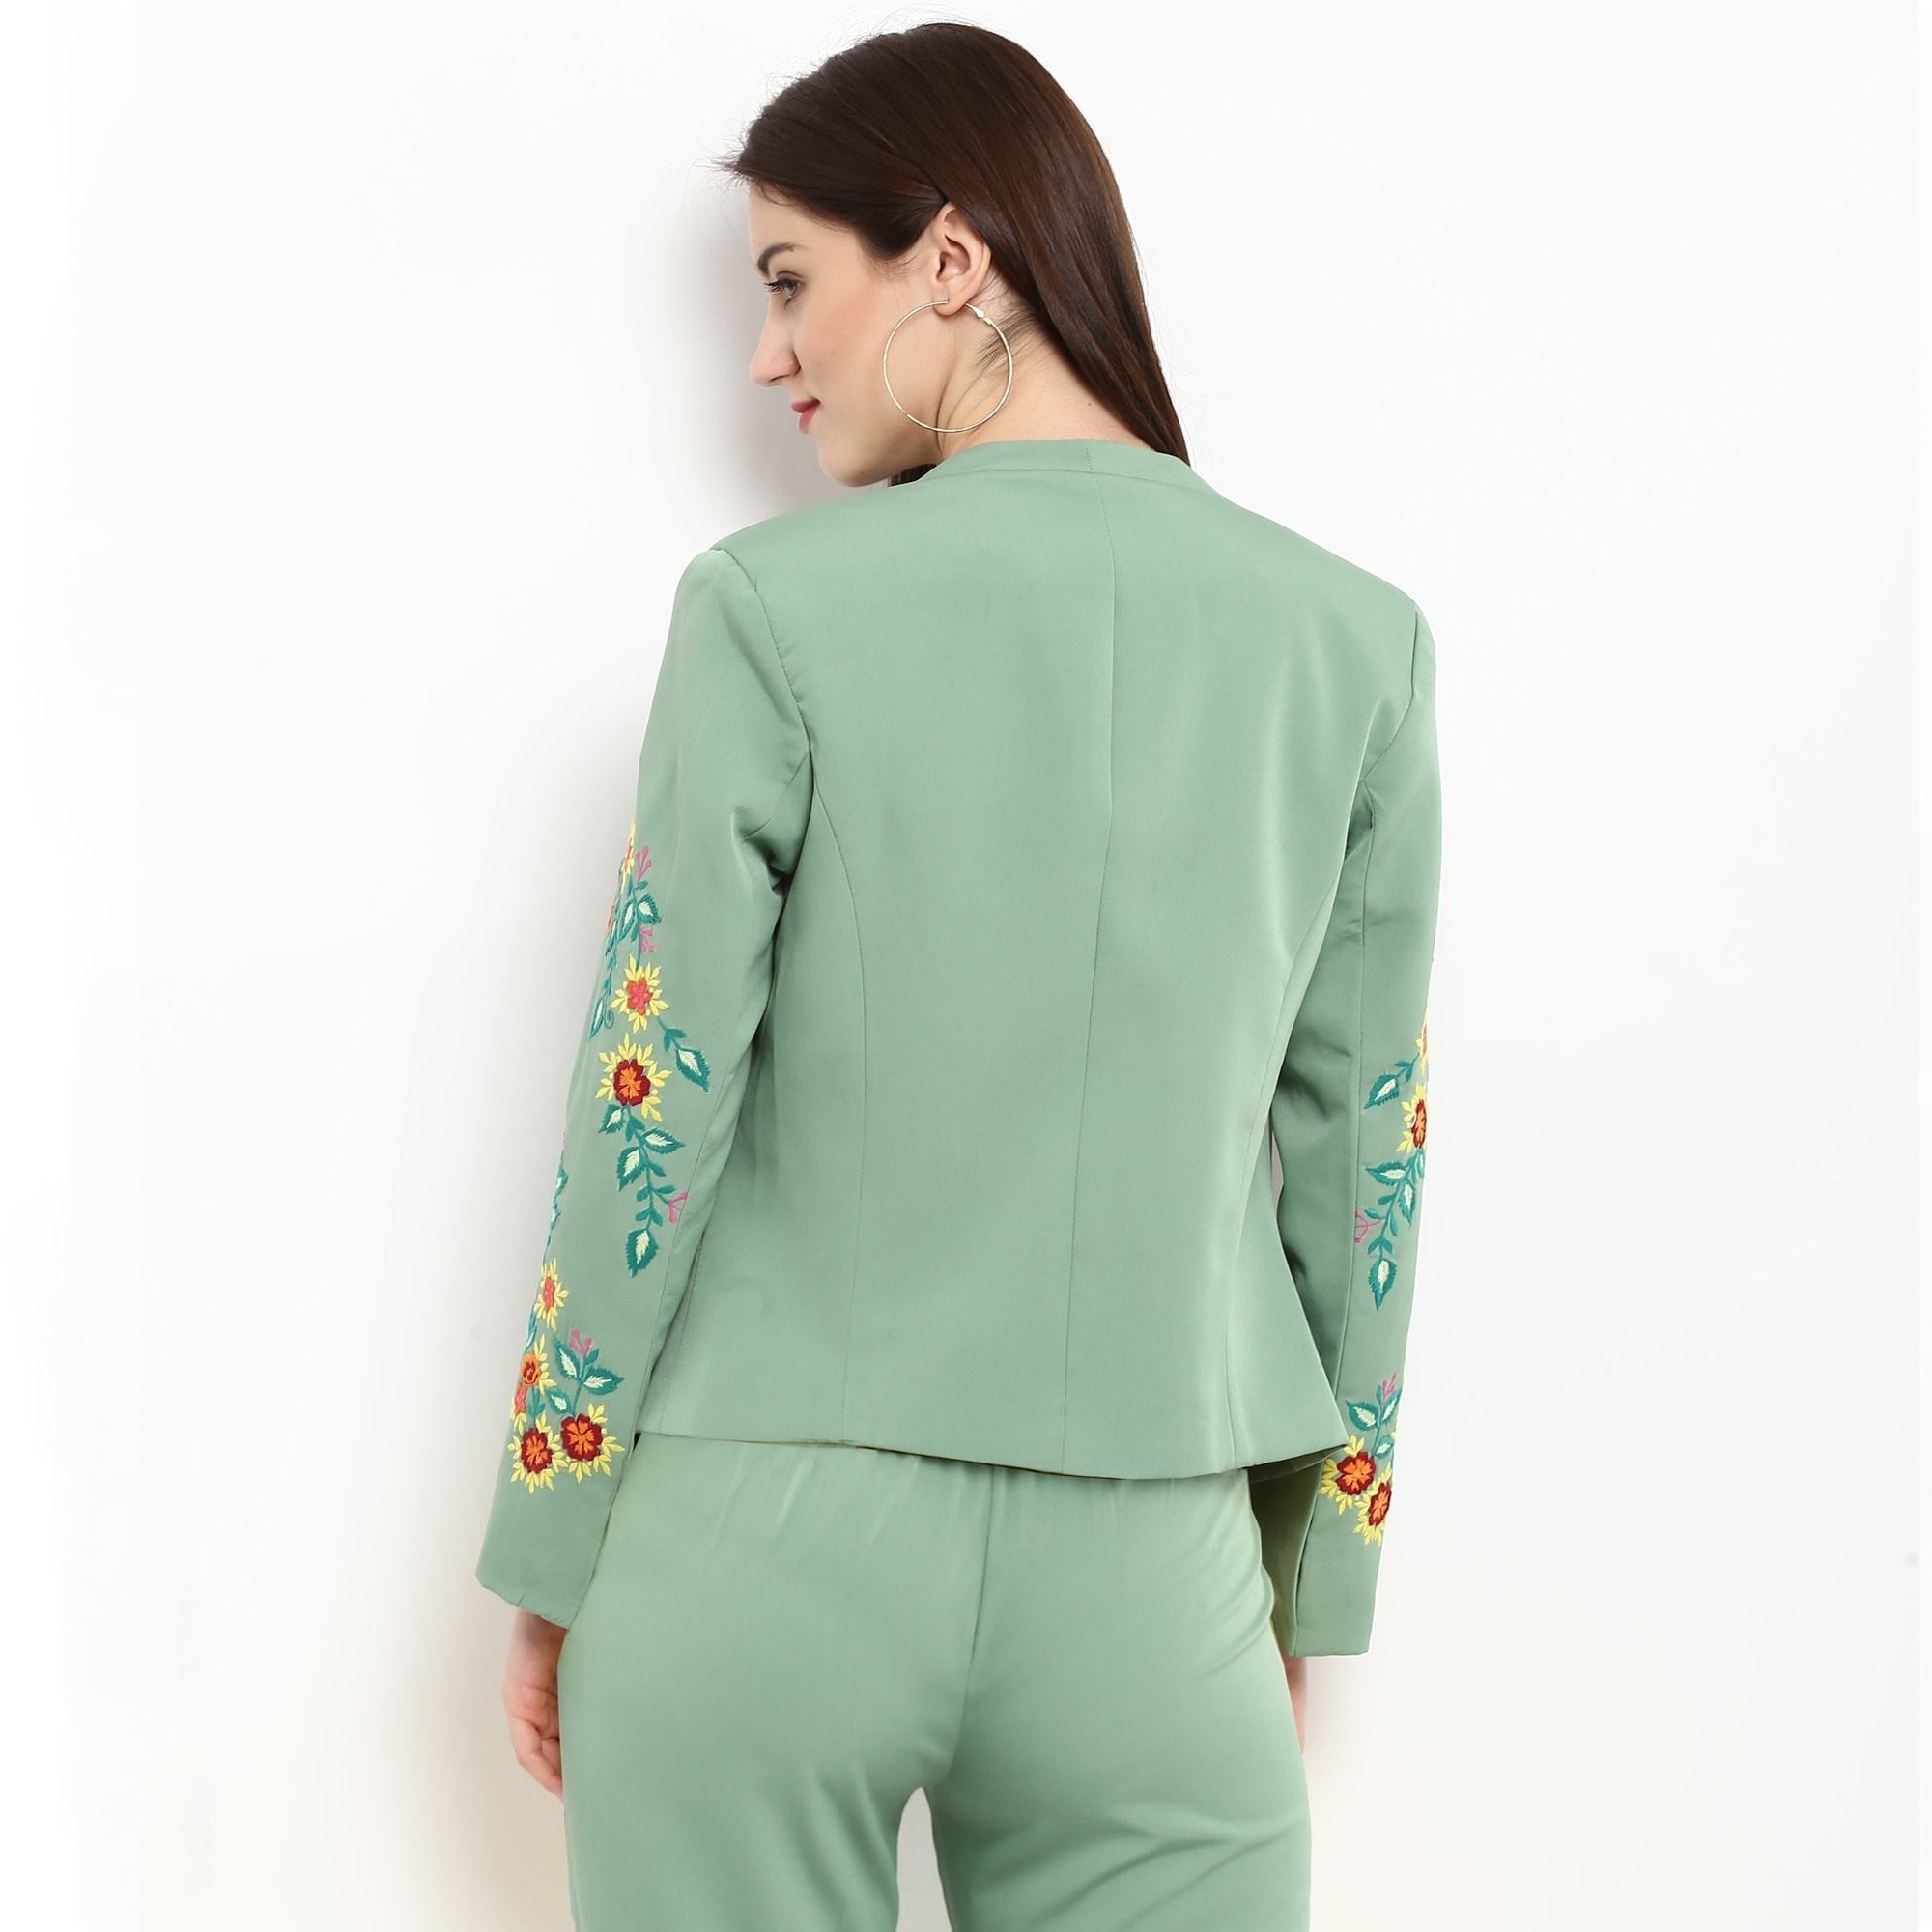 Women's Pastel Green Embroidered Blazer - Pannkh